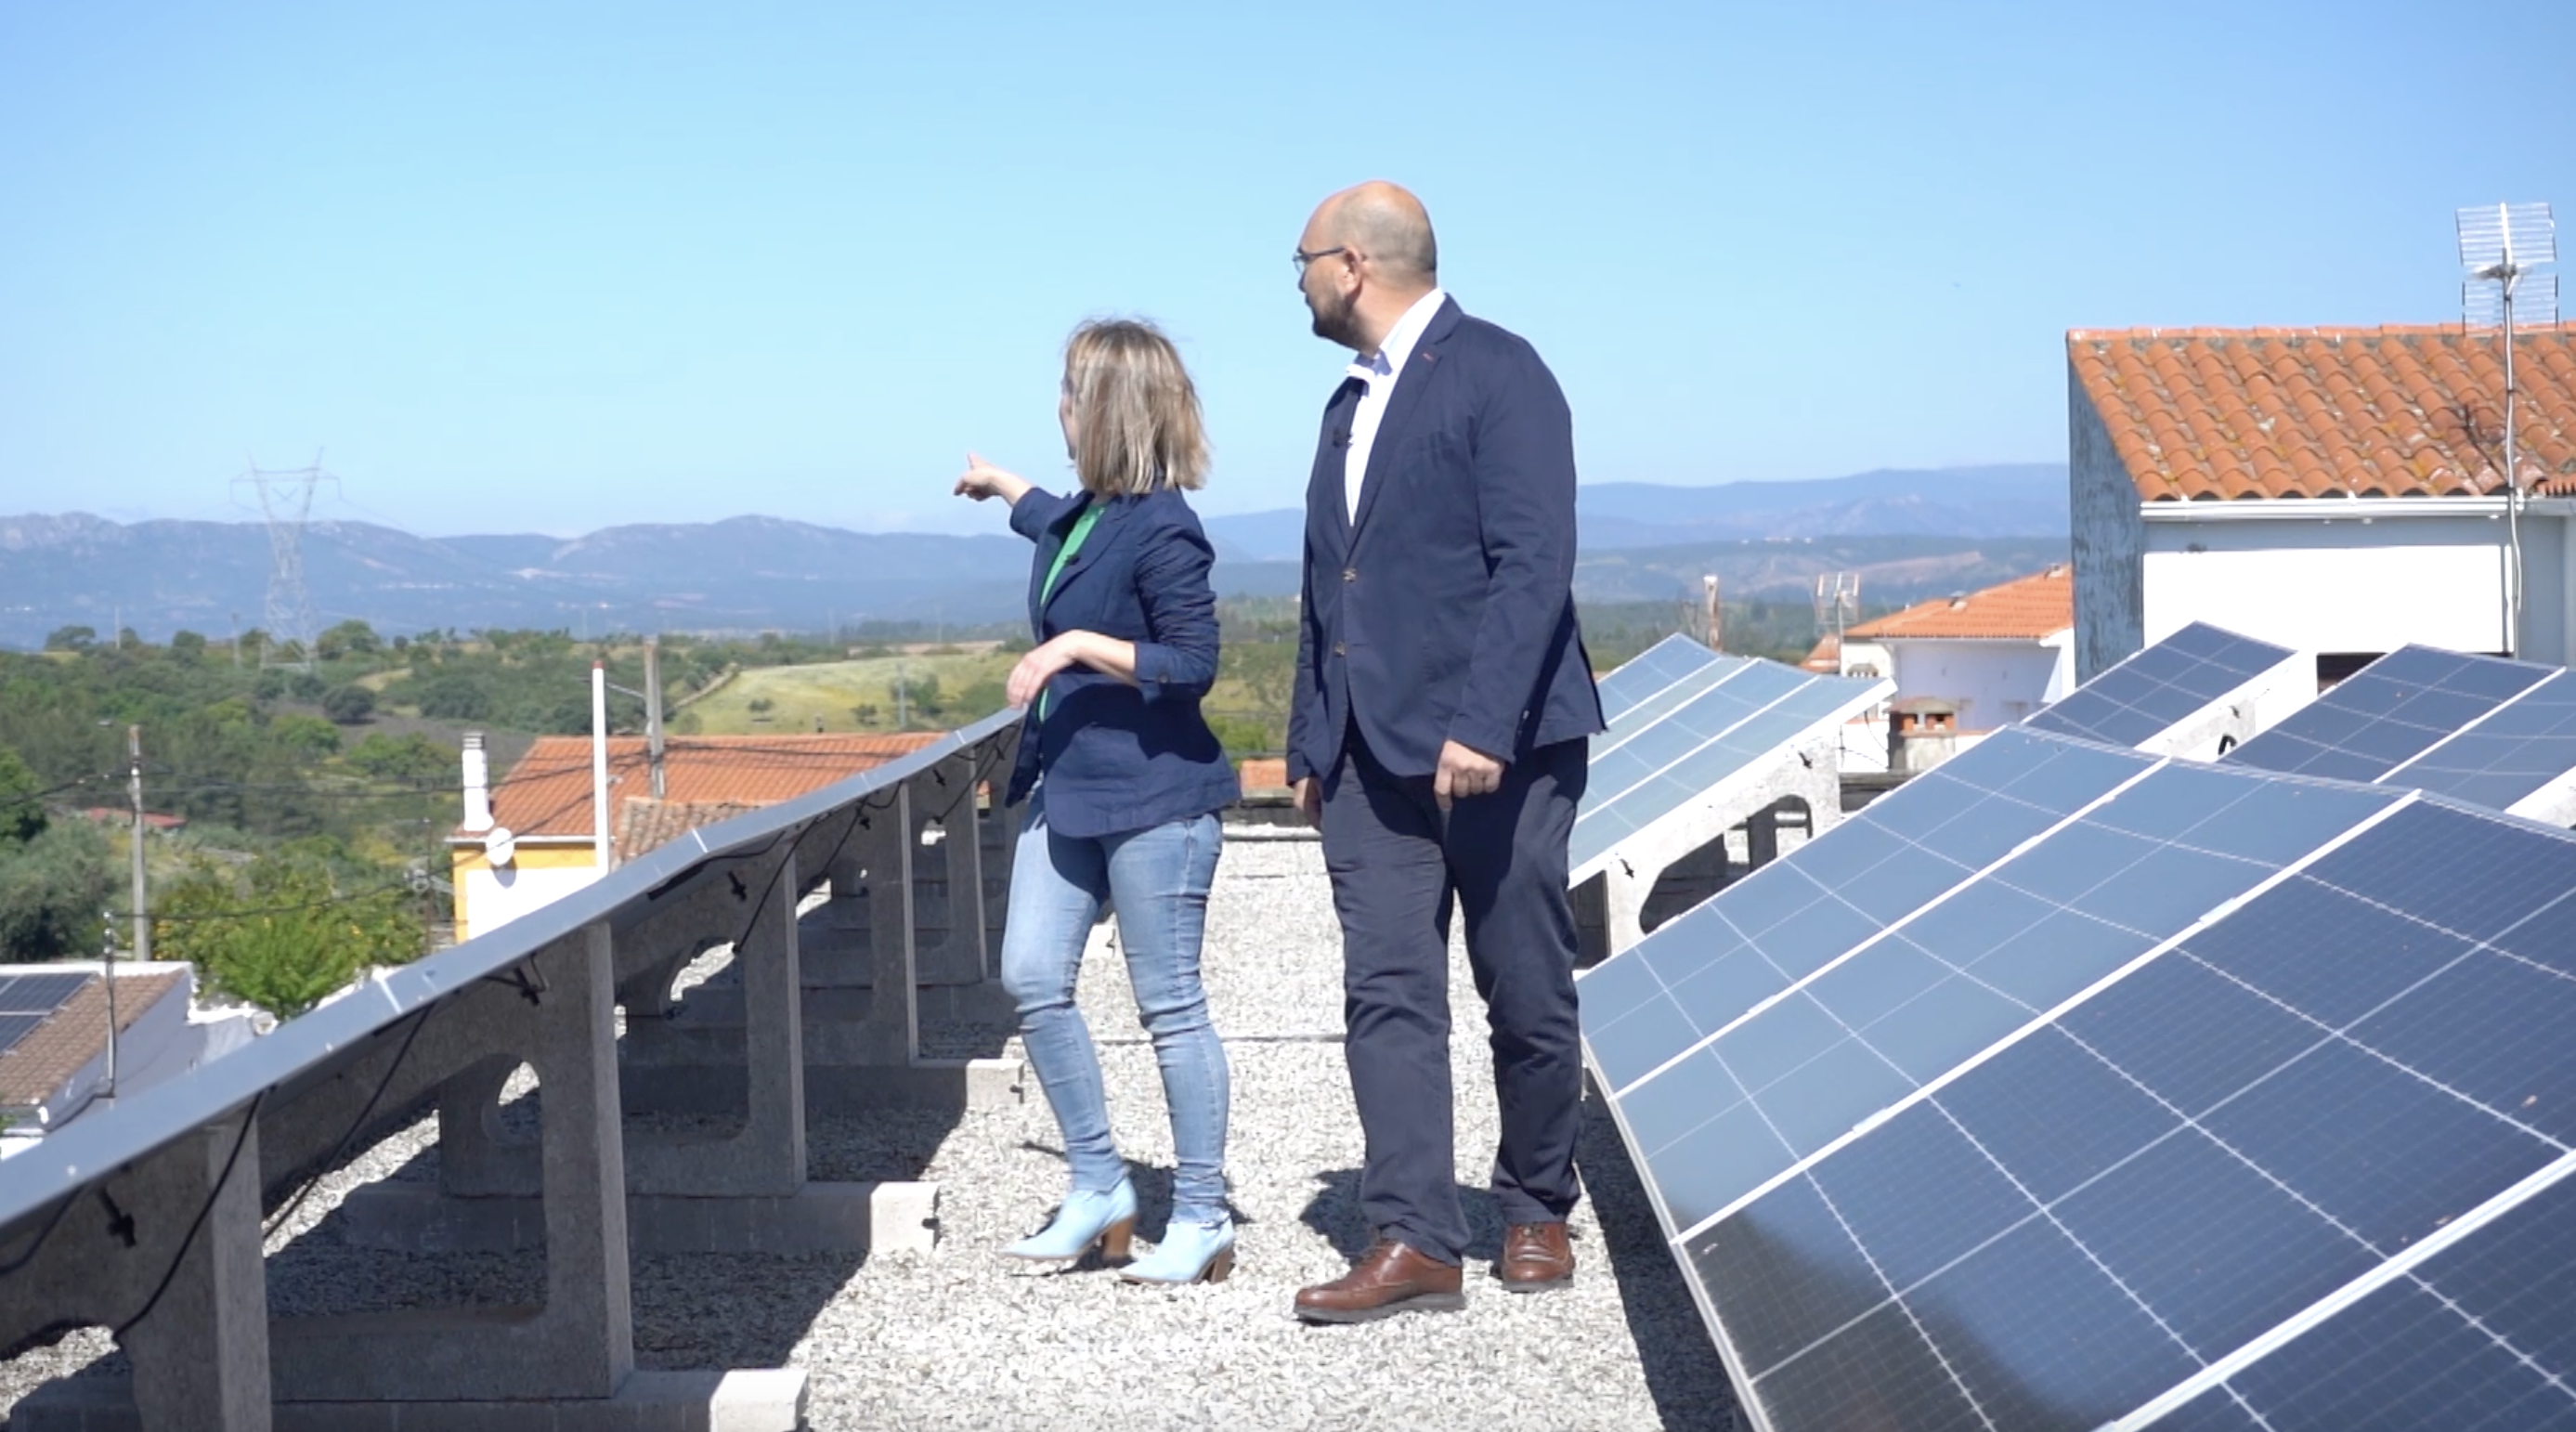 José Manuel Bellot (Renovables en Iberdrola Extremadura) explica el modelo de comunidad solar de Cedillo con Laura Blanco